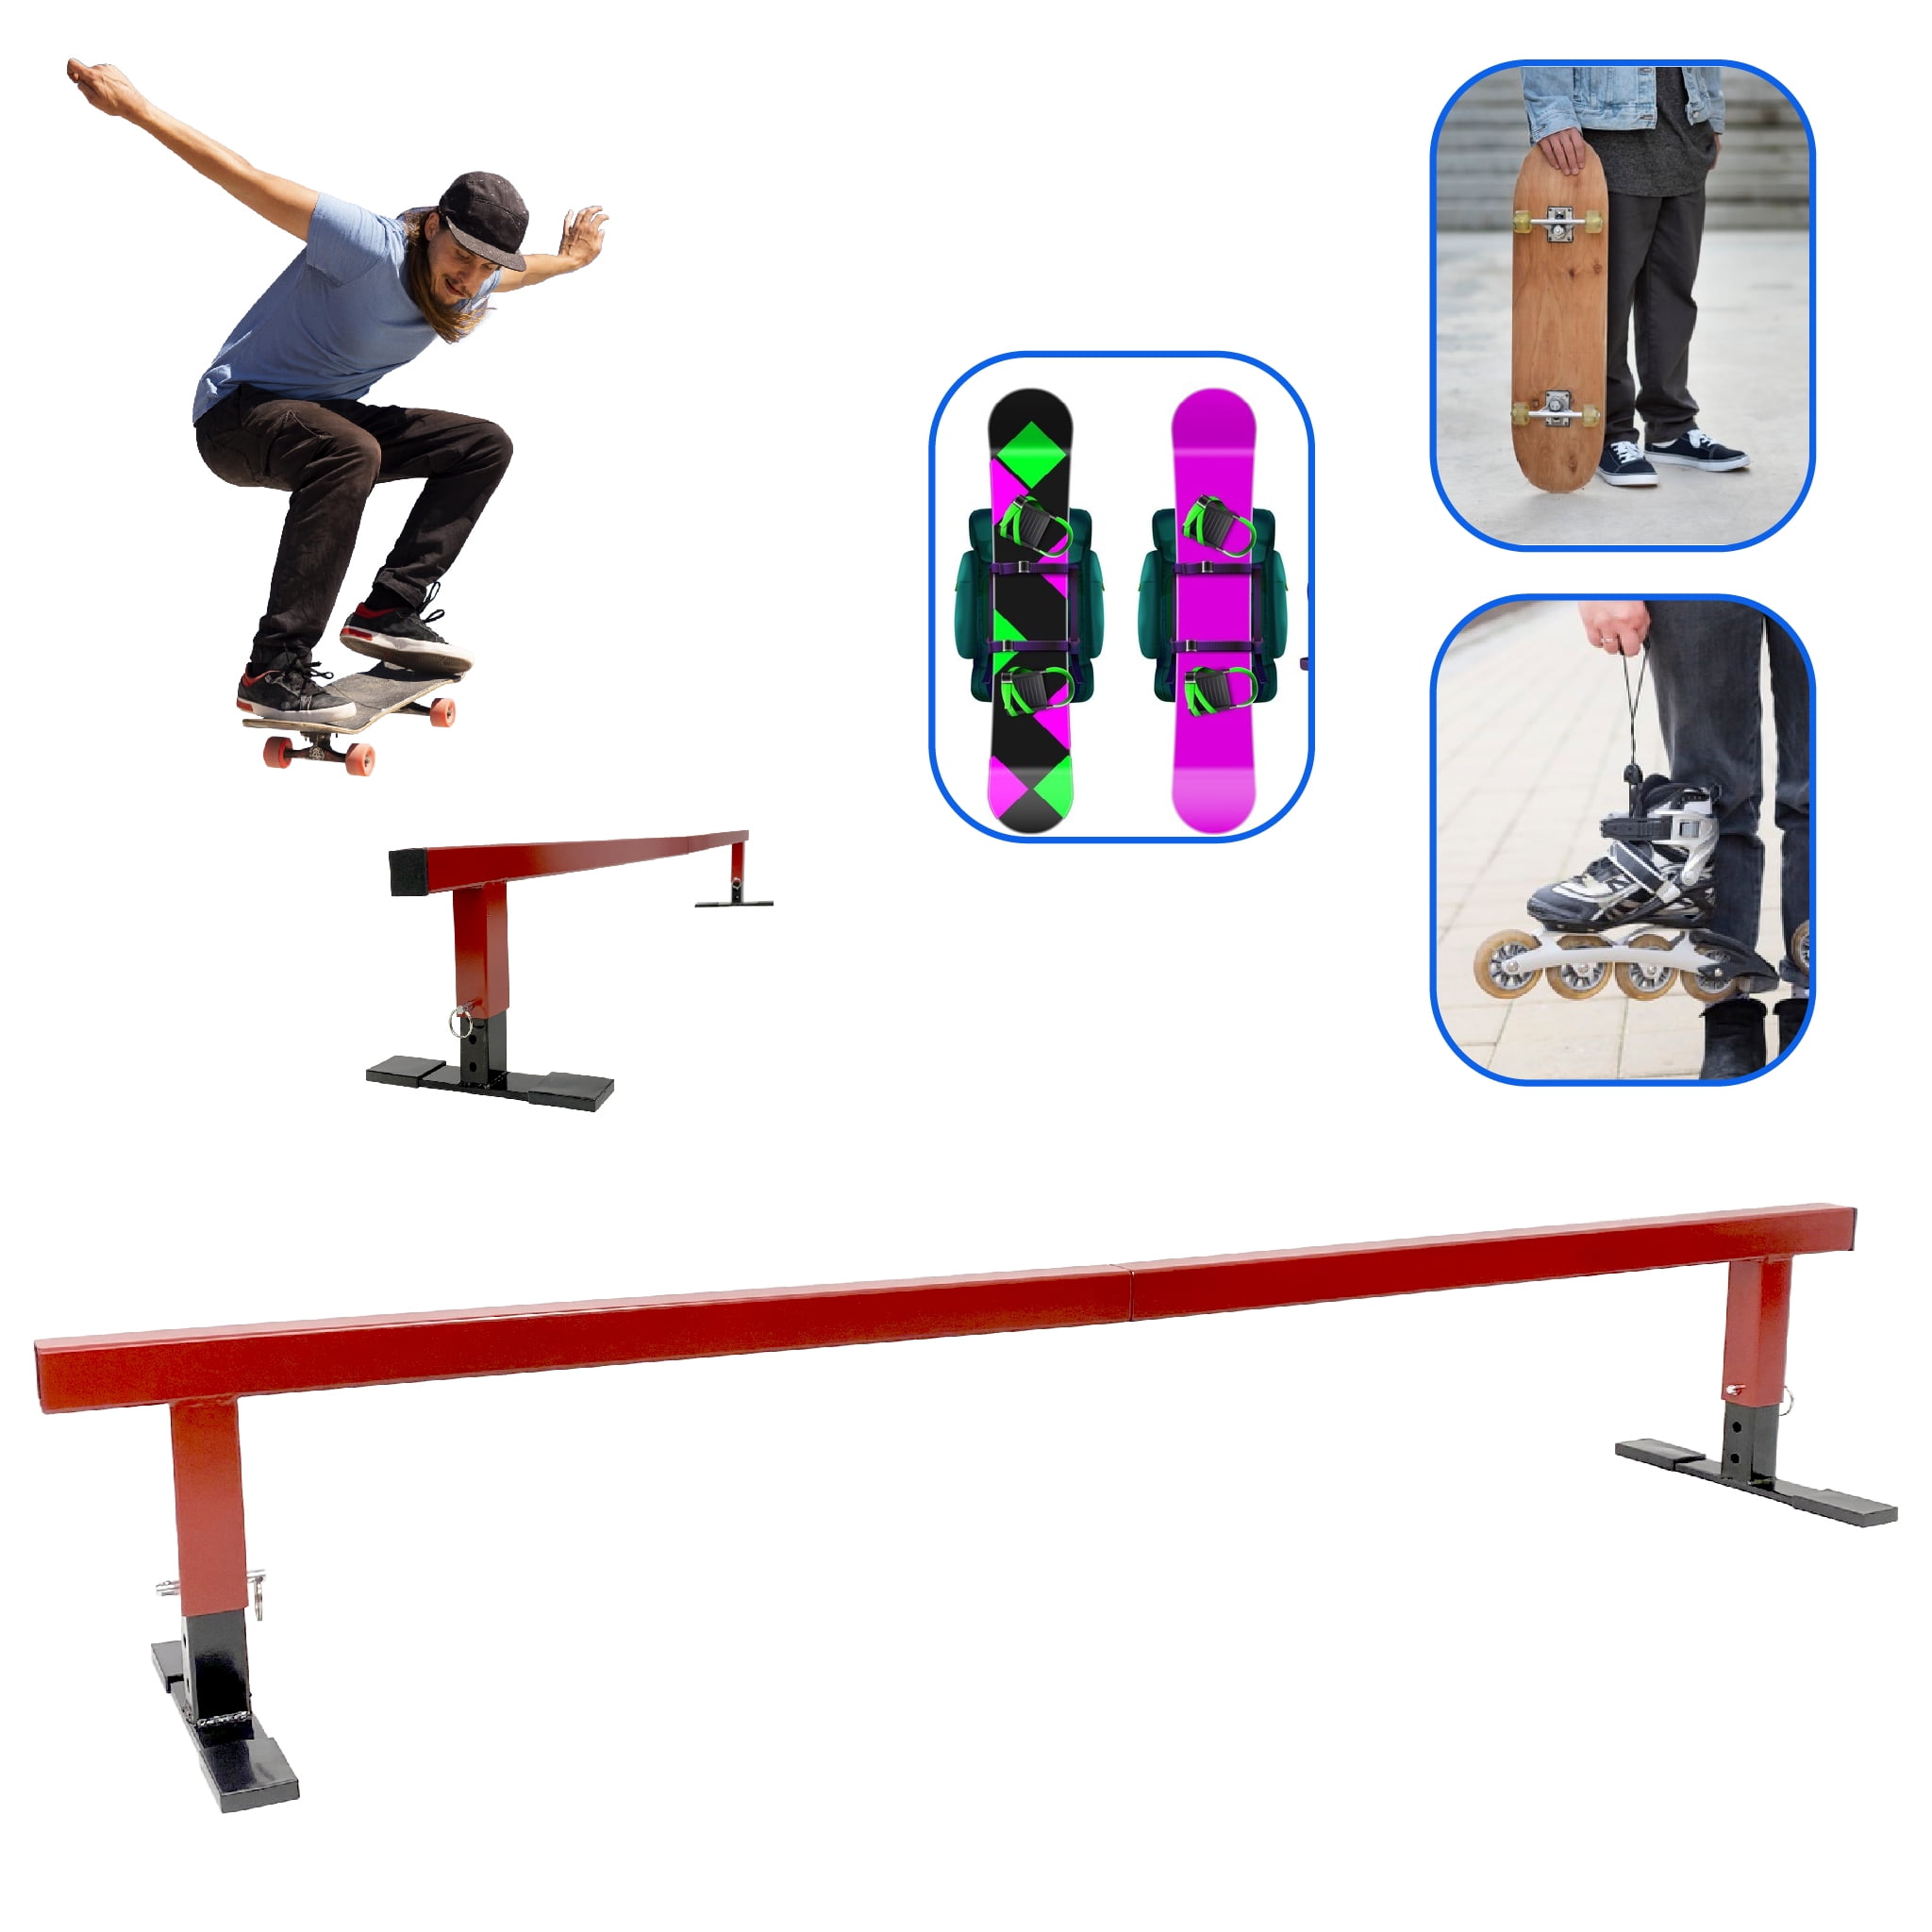 Grind Rail System V 1.7 + Roller Skate Anim Basic Pack! in